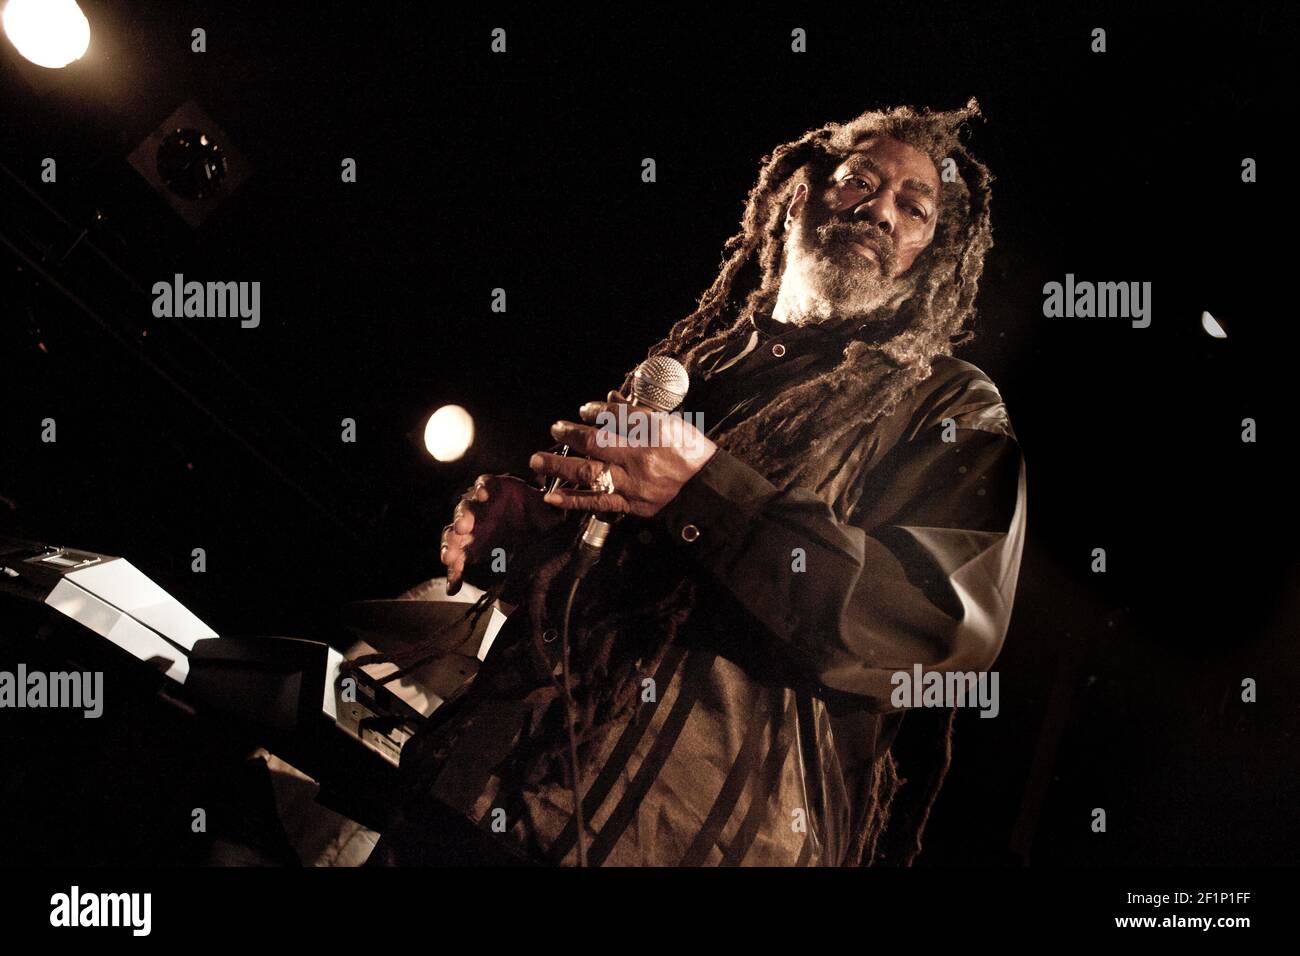 Michael Bunel / le Pictorium - Johnny Clarke - 19/03/2013 - Francia - Johnny Clarke è un cantante giamaicano reggae, nato il 12 gennaio 1955 a Whitfield Town, un quartiere di Kingston. 19 marzo 2013. Parigi, Francia. Foto Stock